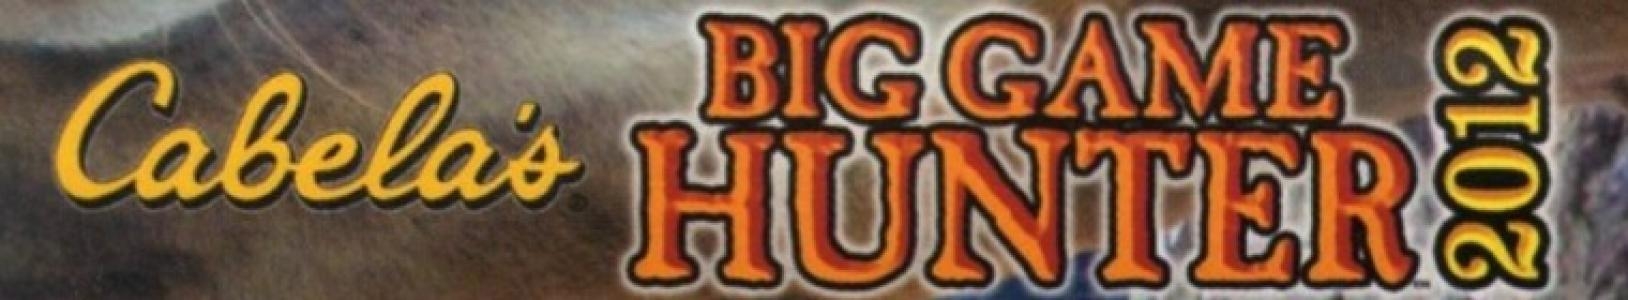 Cabela's Big Game Hunter 2012 banner